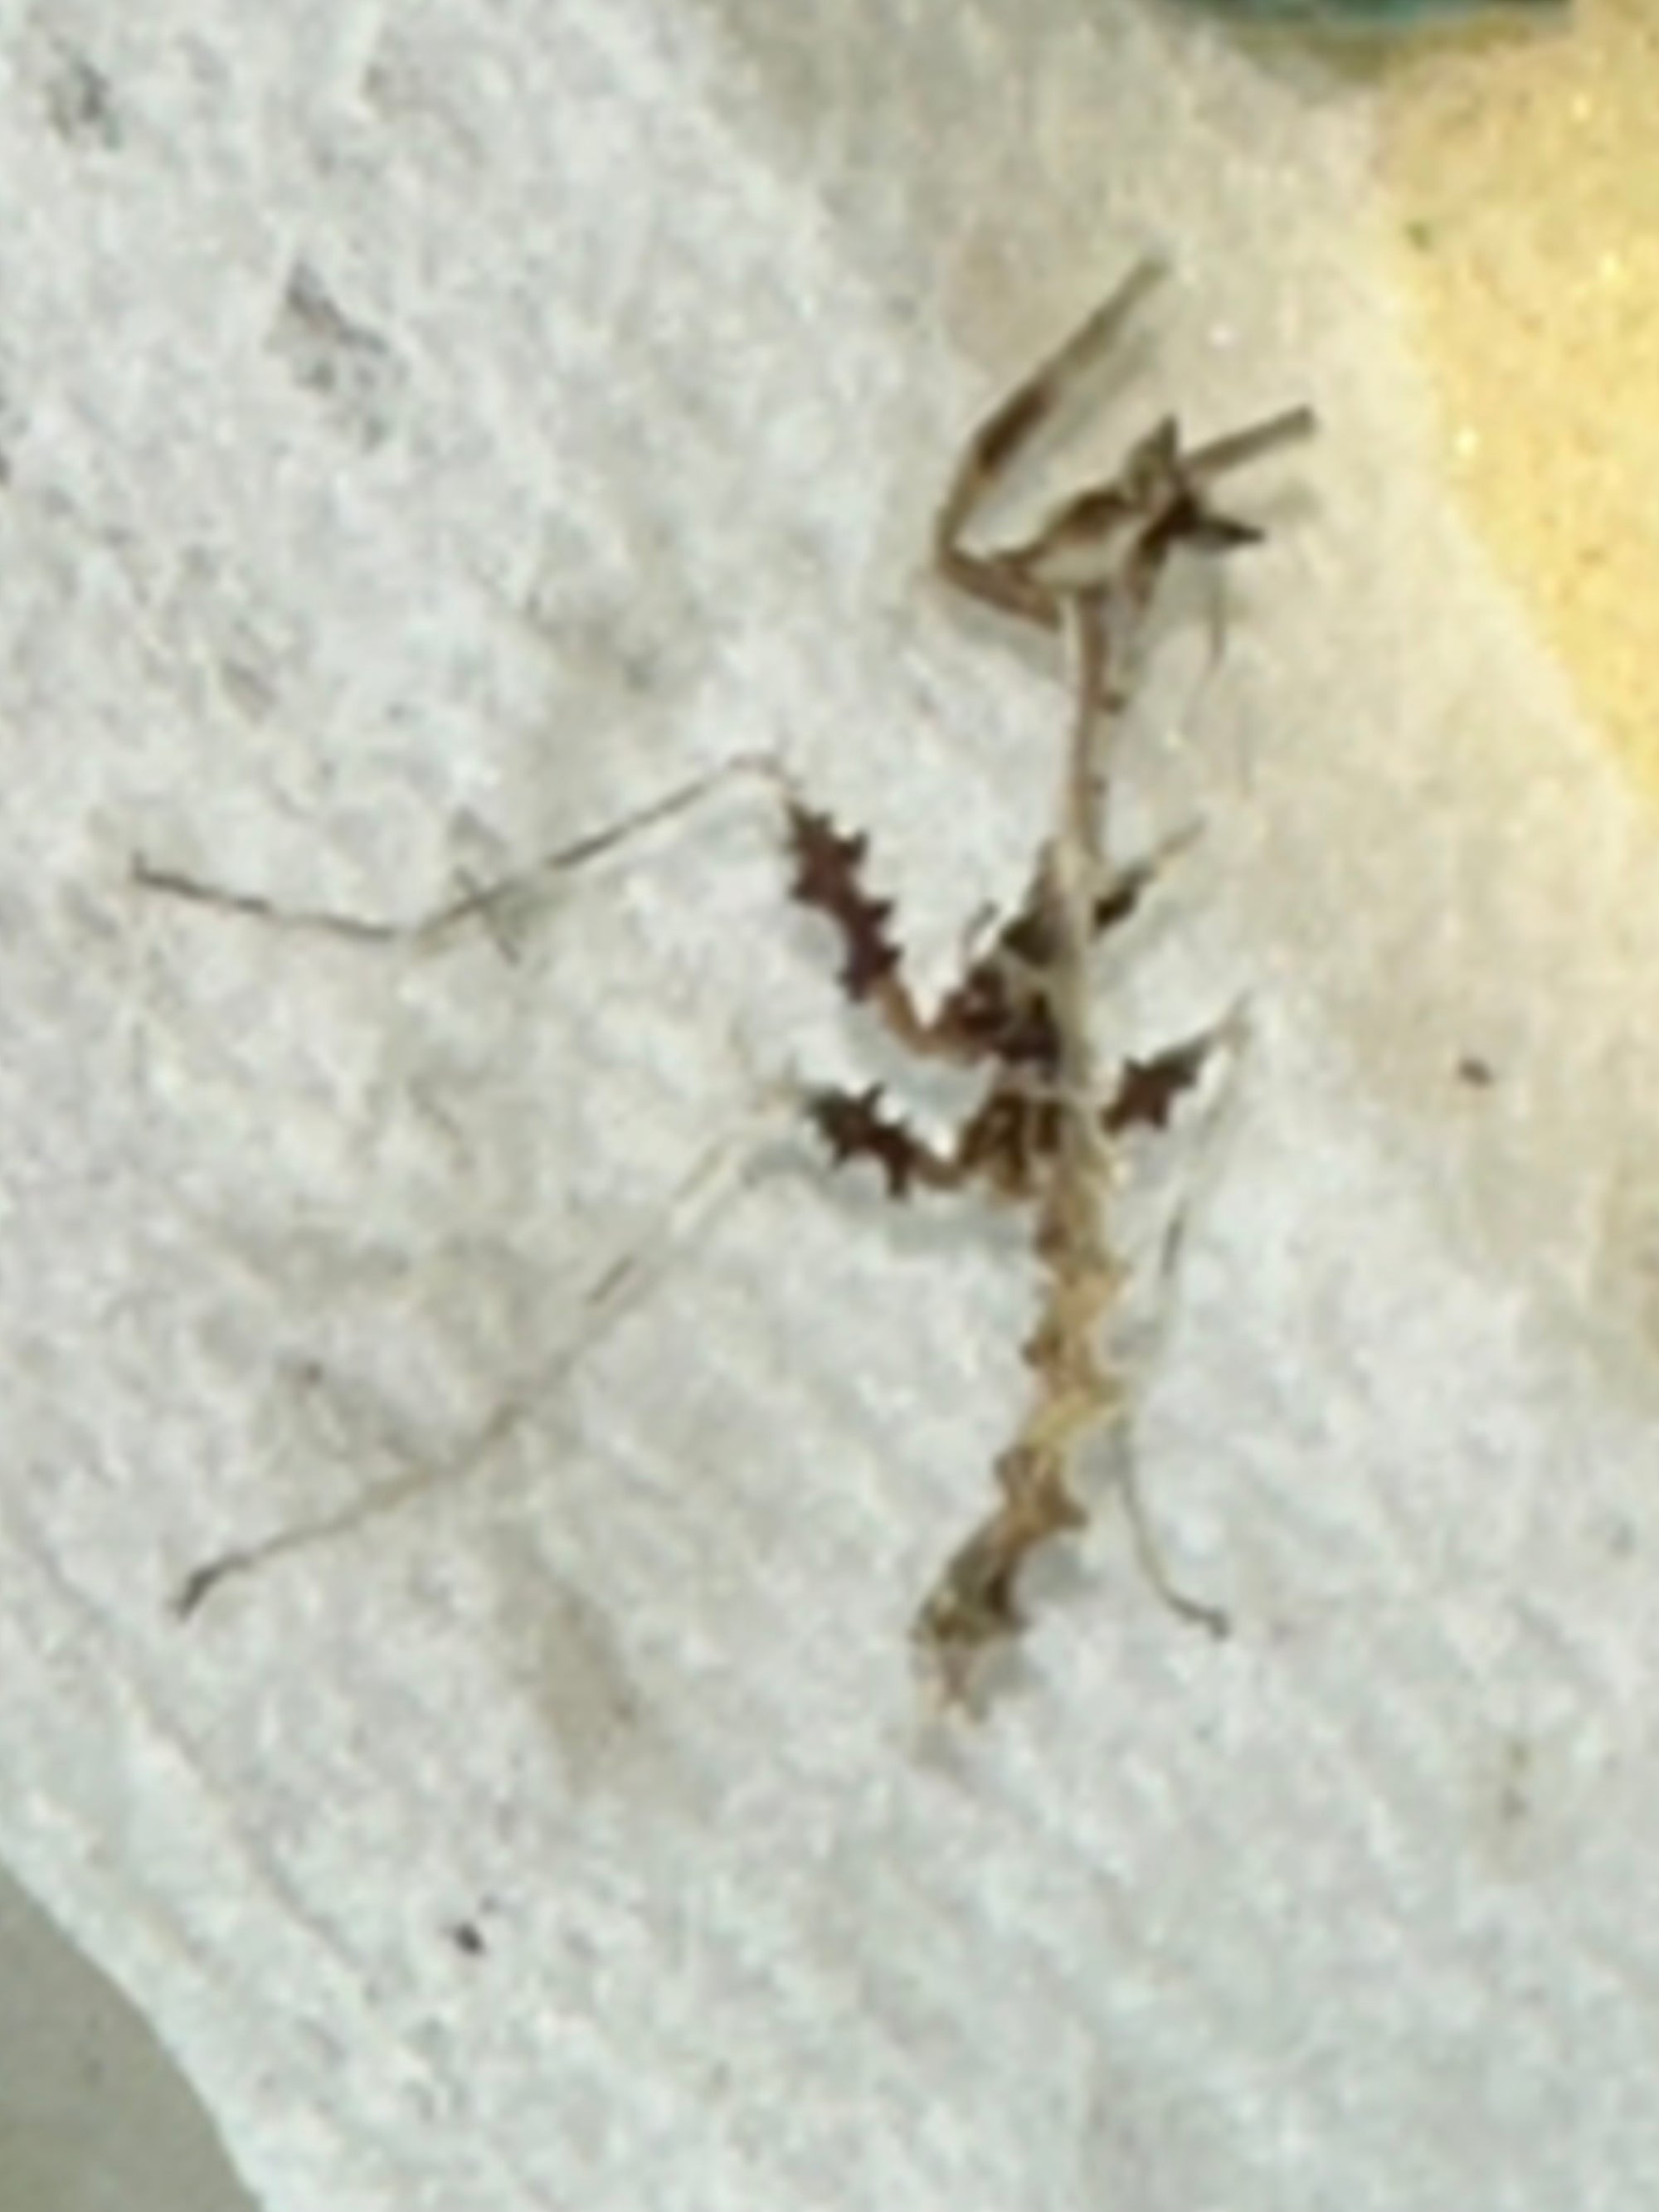 Metatoxodera subparallela praying mantis - USMANTIS